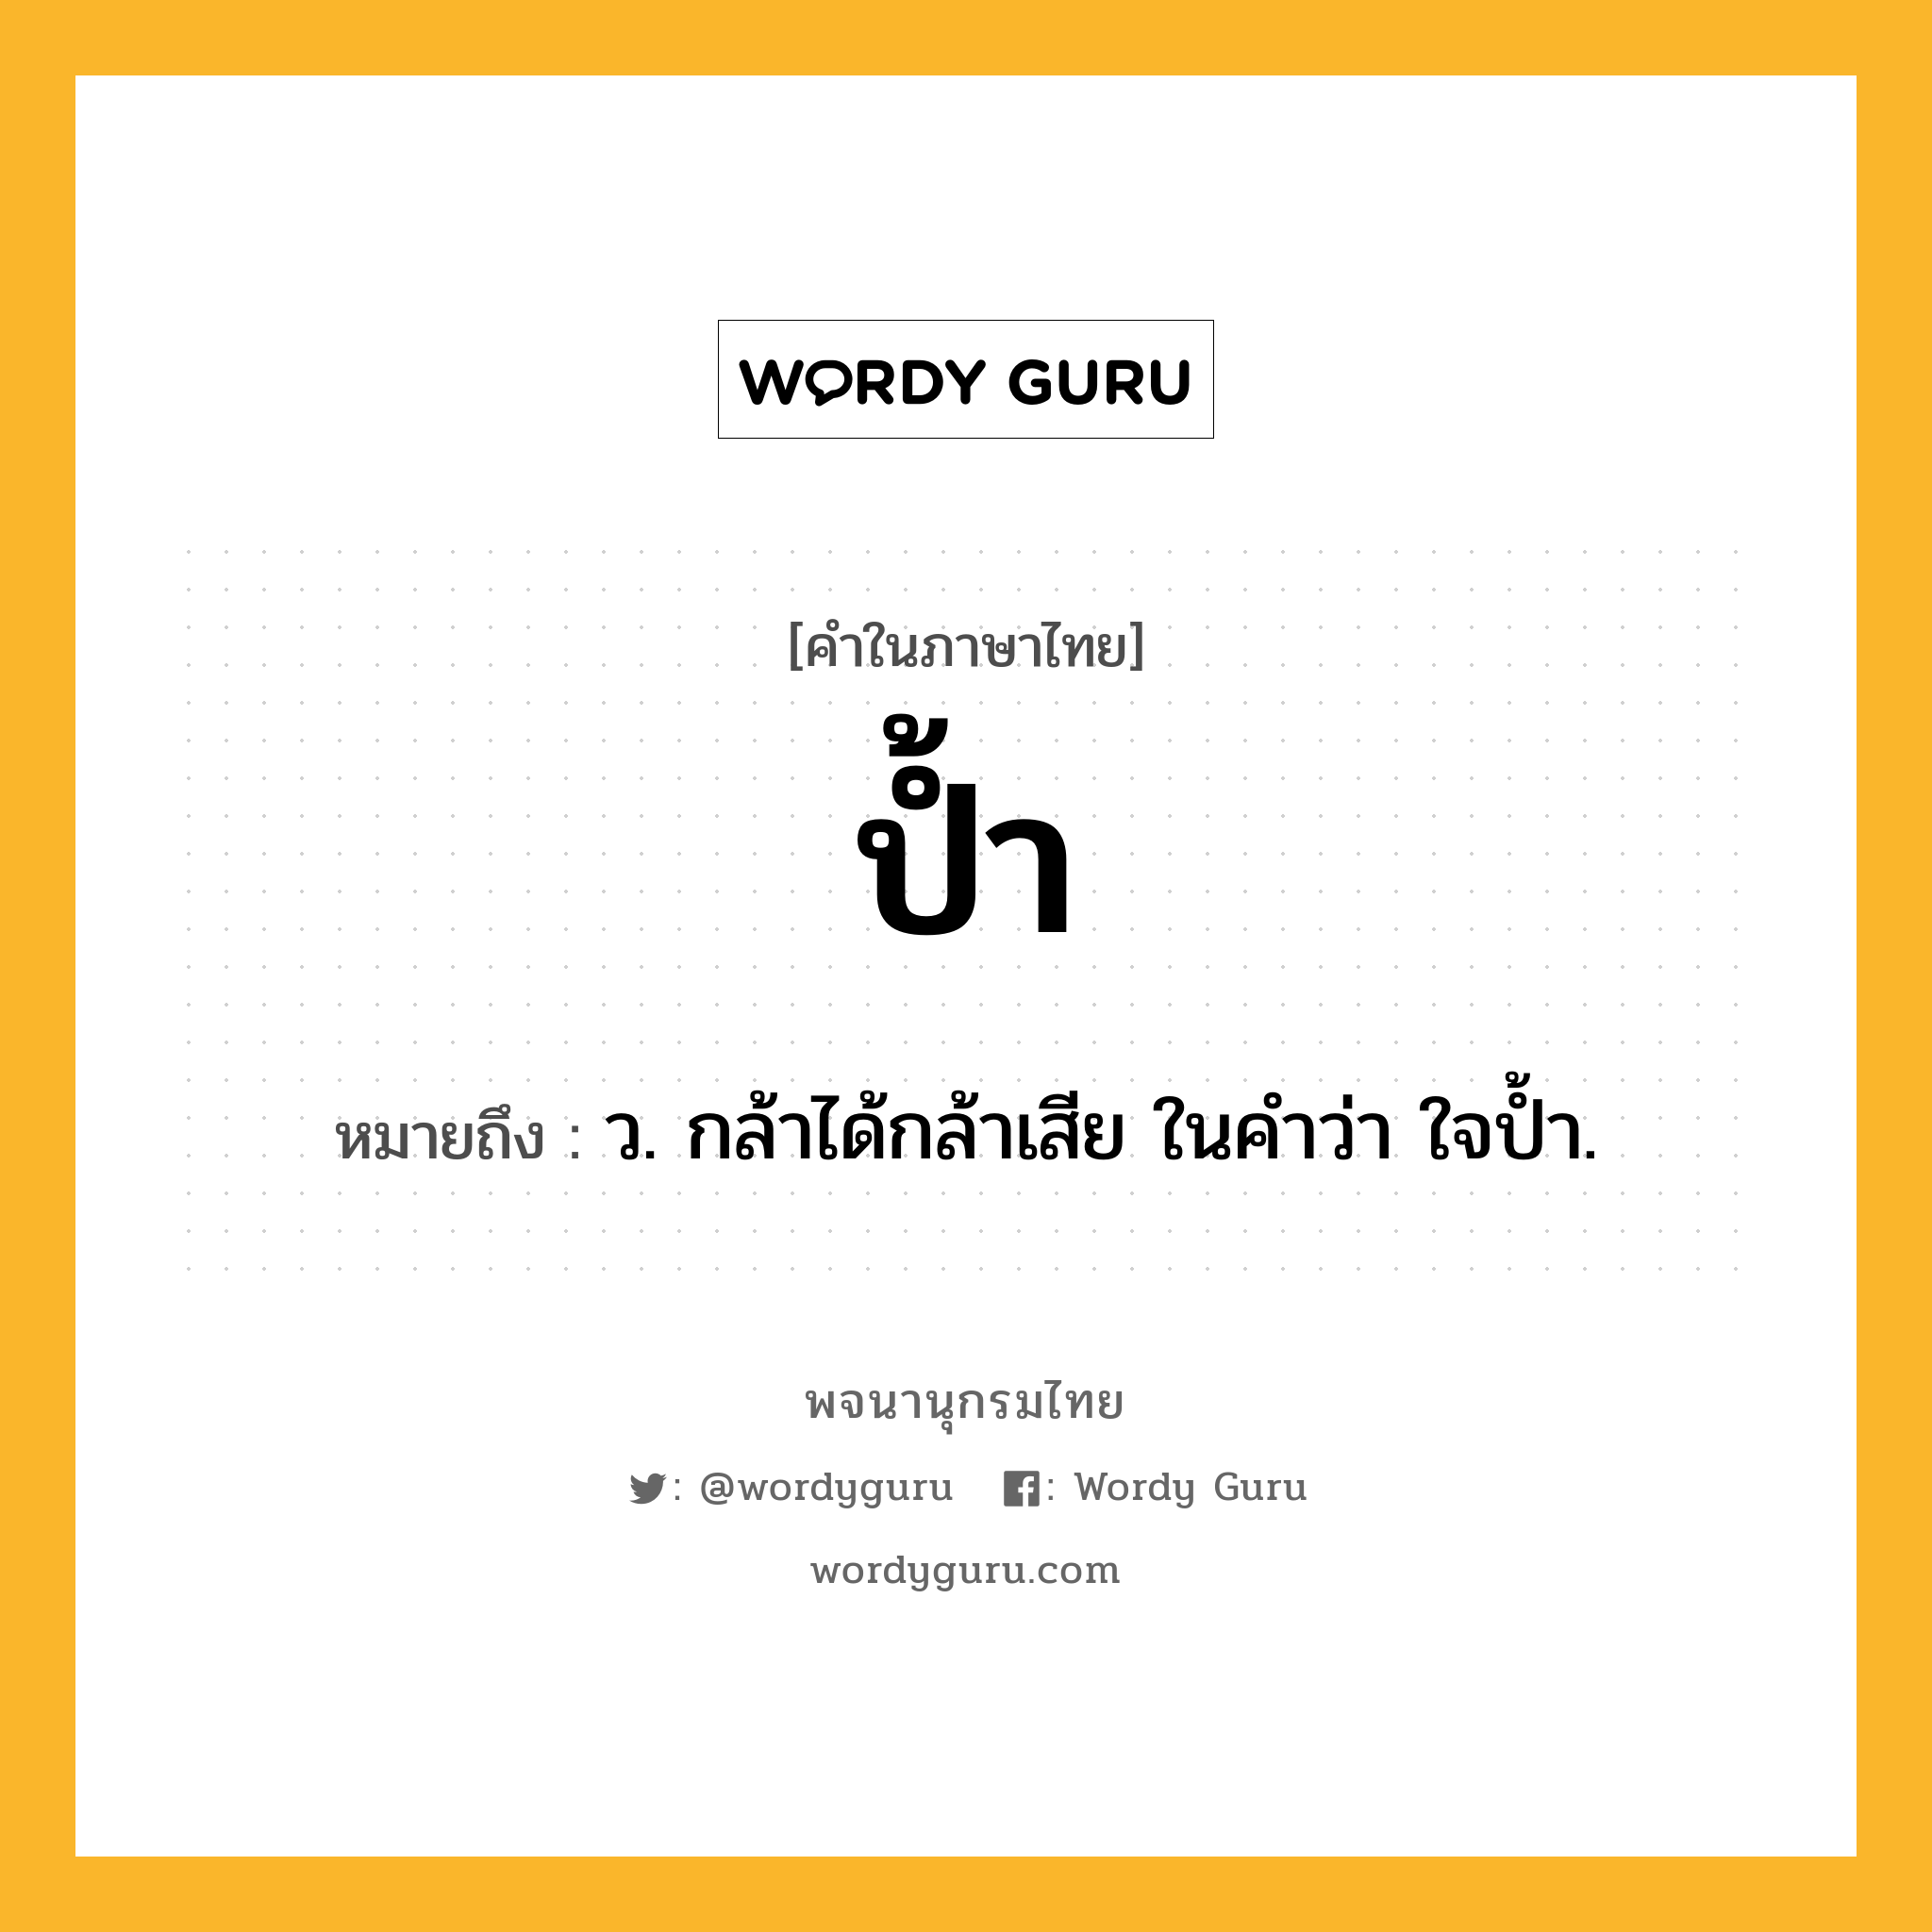 ป้ำ ความหมาย หมายถึงอะไร?, คำในภาษาไทย ป้ำ หมายถึง ว. กล้าได้กล้าเสีย ในคําว่า ใจปํ้า.